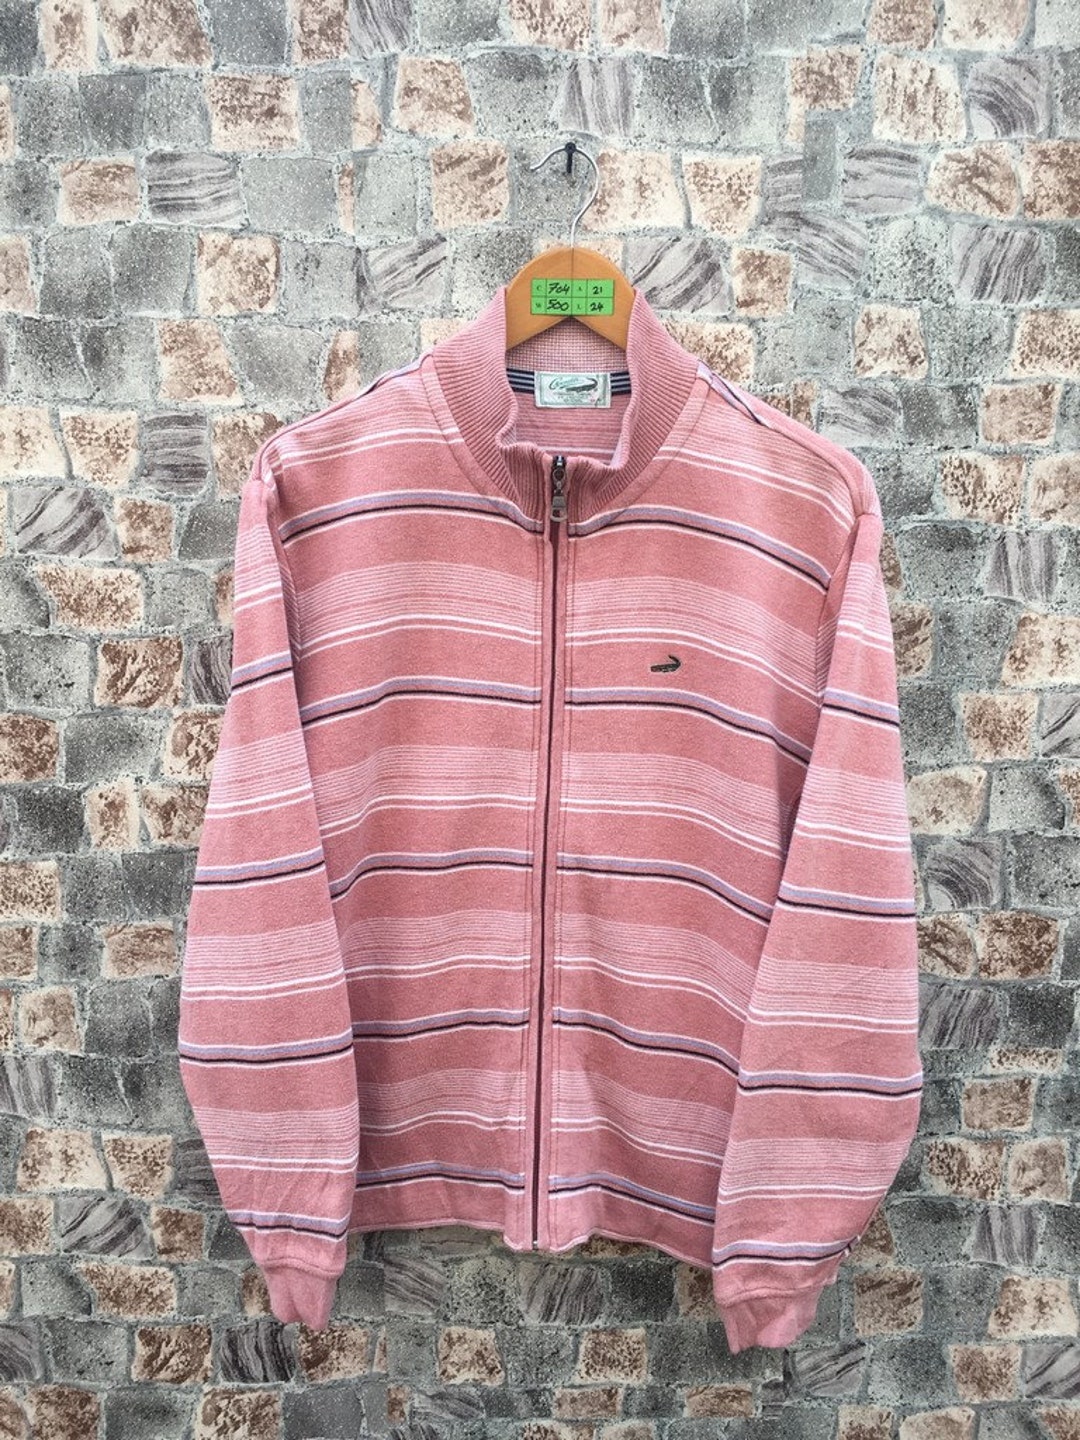 Vintage Crocodile Stripes Pink Sweatshirt Medium 90's - Etsy